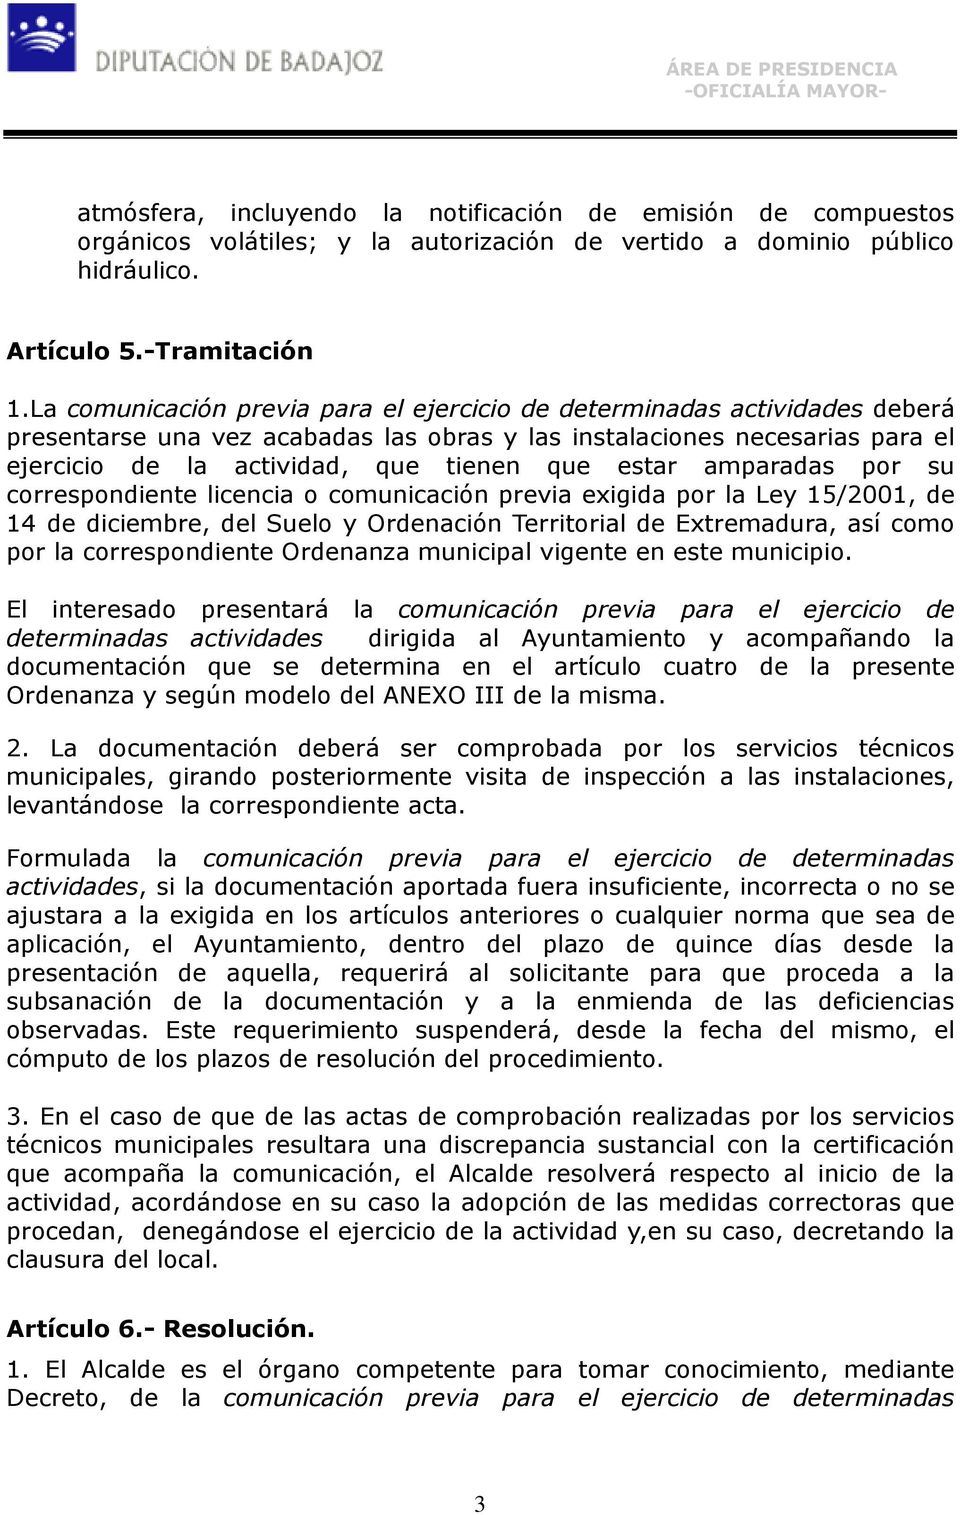 estar amparadas por su correspondiente licencia o comunicación previa exigida por la Ley 15/2001, de 14 de diciembre, del Suelo y Ordenación Territorial de Extremadura, así como por la